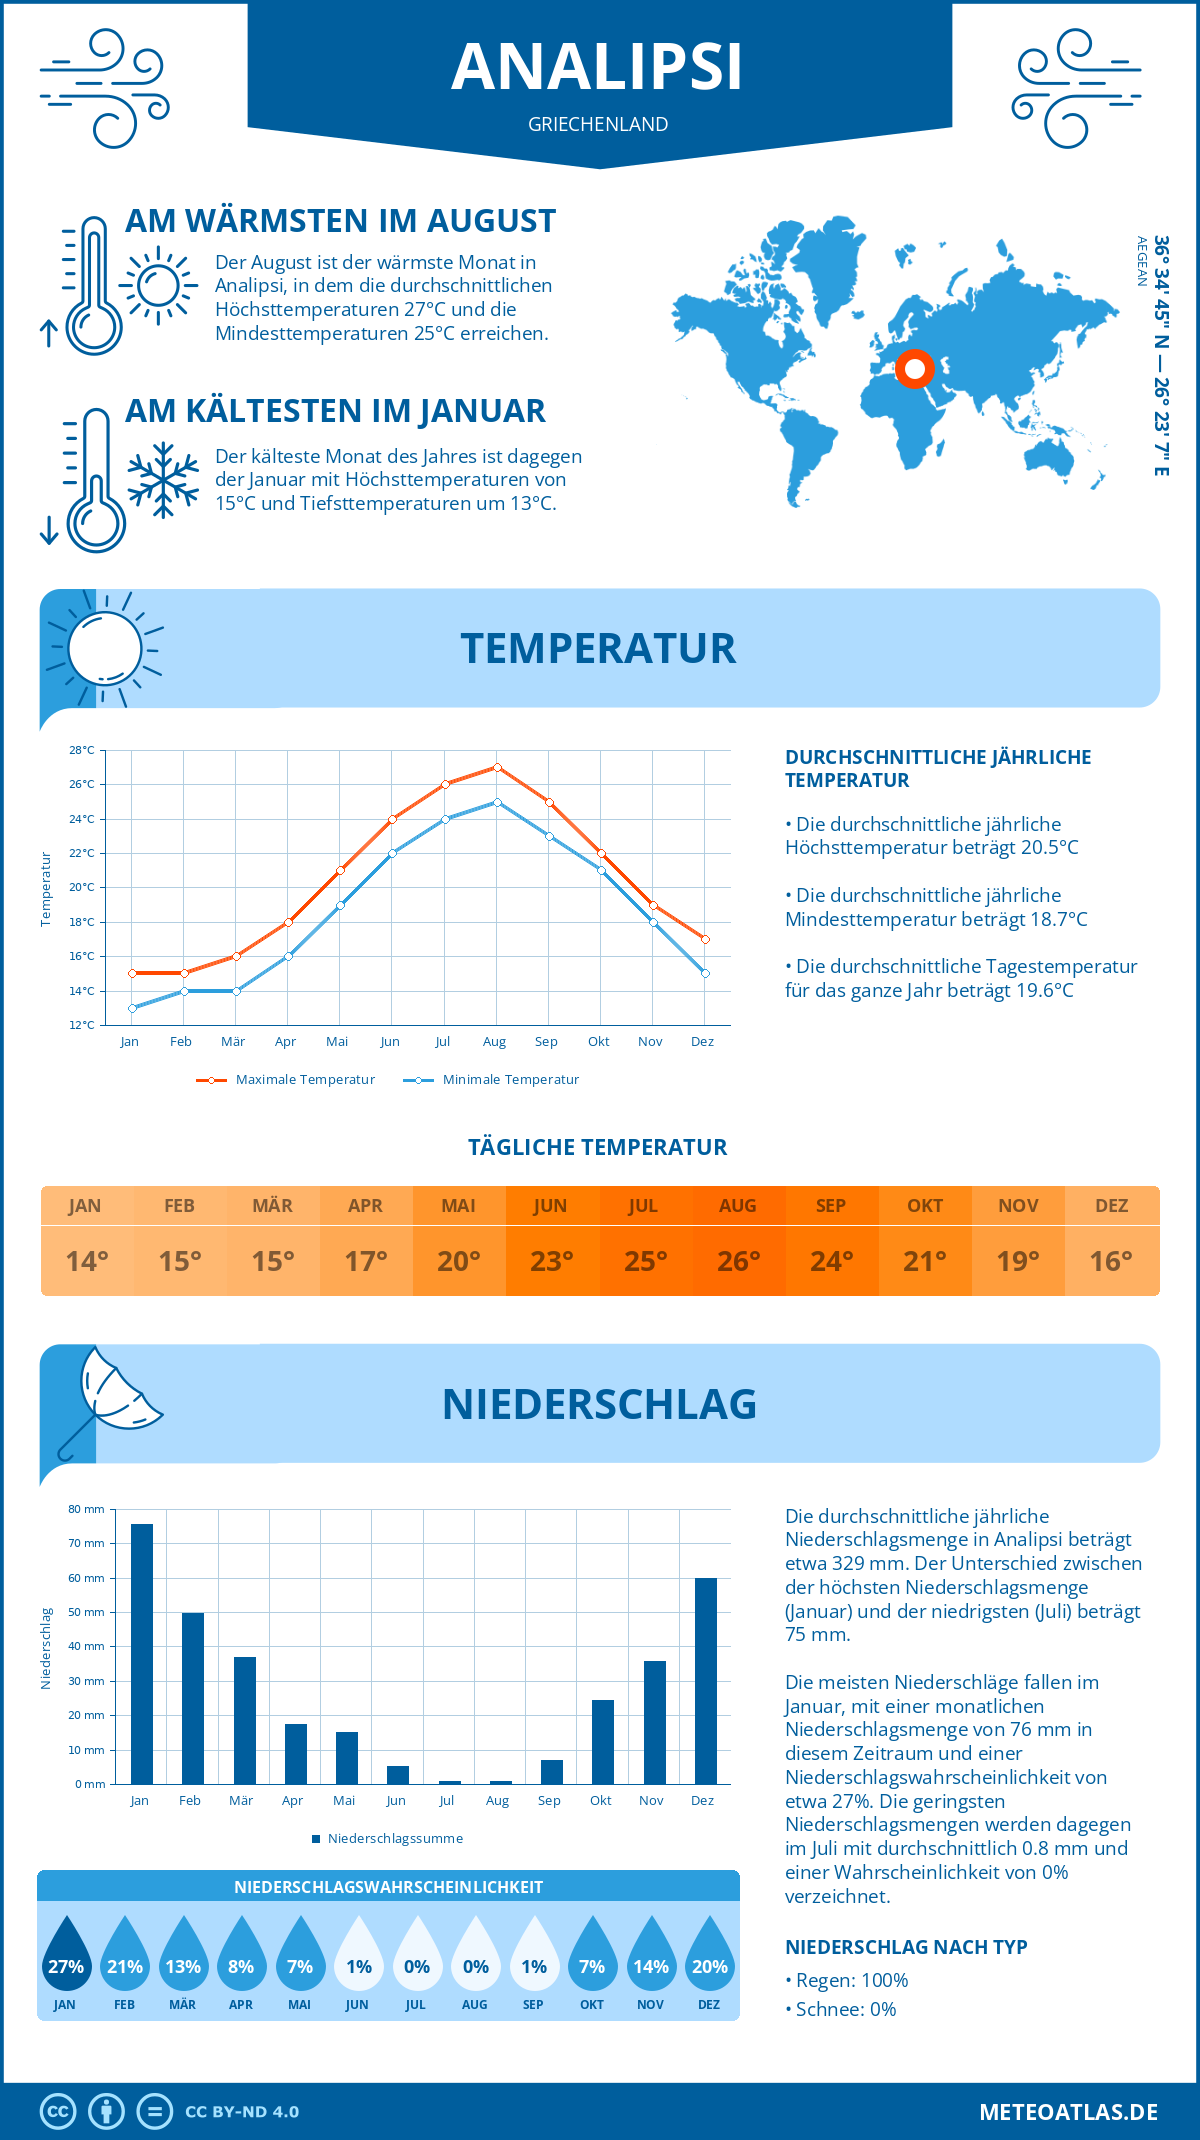 Wetter Analipsi (Griechenland) - Temperatur und Niederschlag